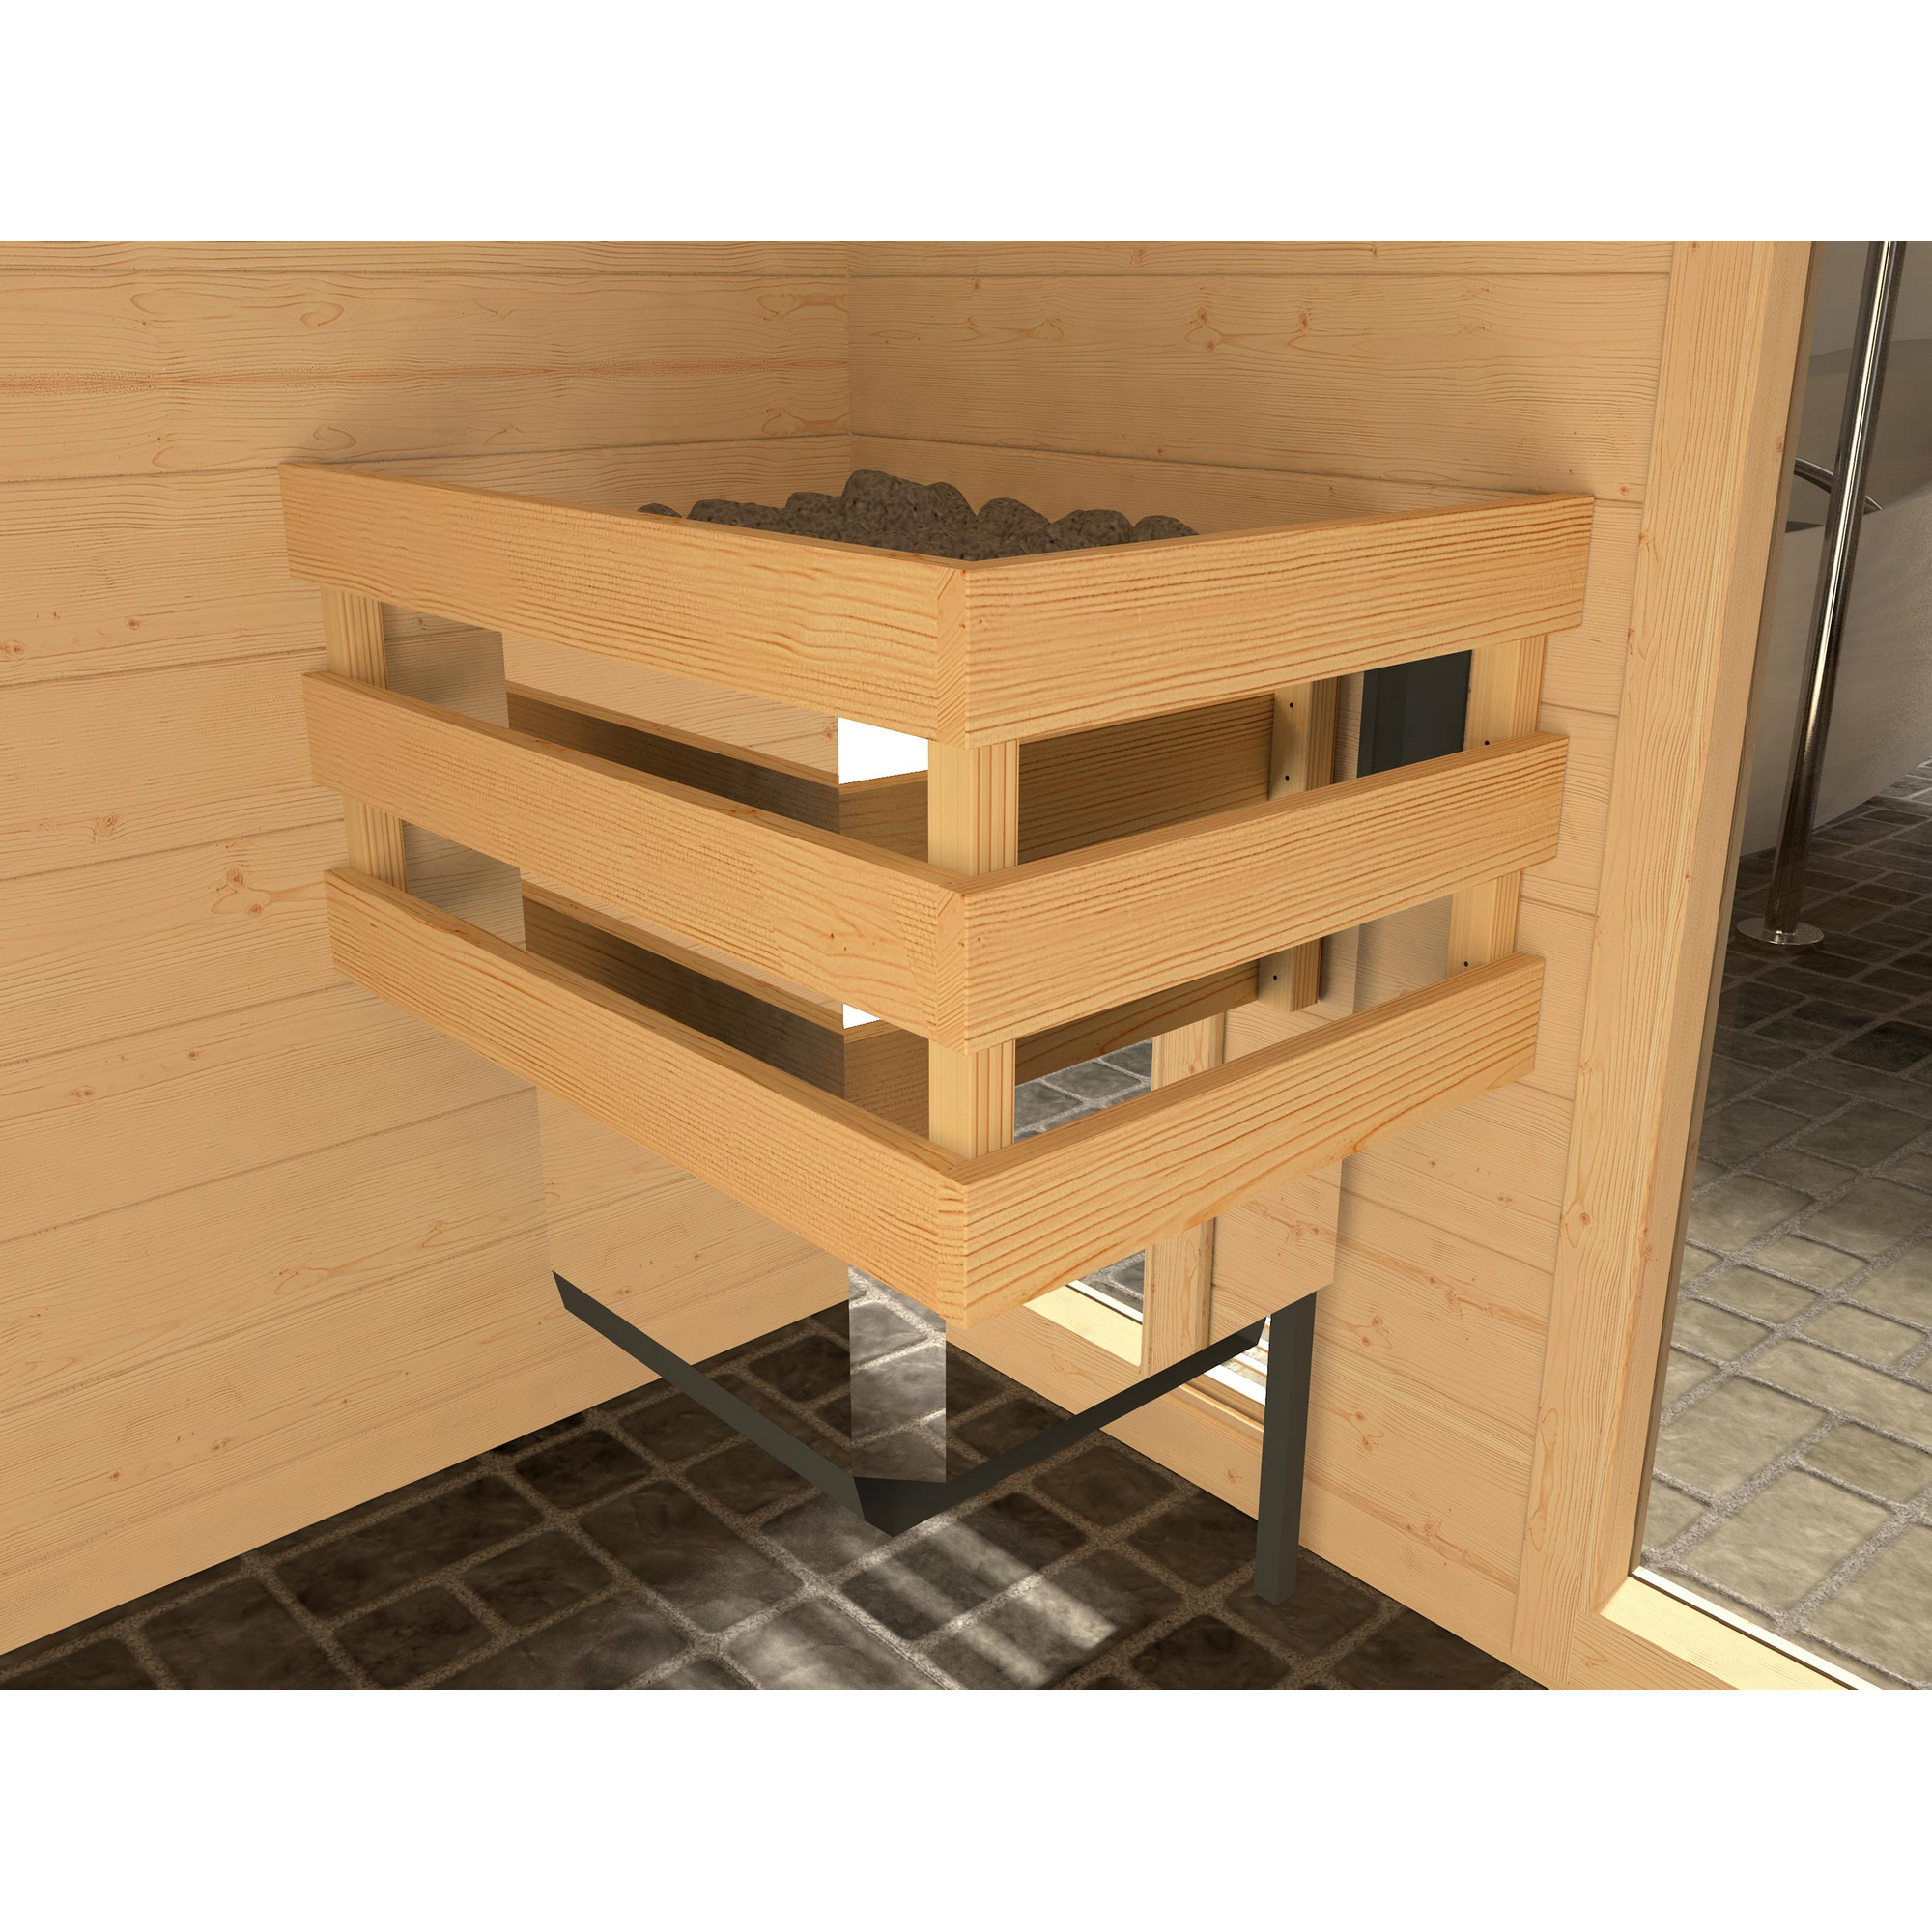 Massivholz-Sauna 'Valida 1' mit 4,5 kW OS-Ofenset, Steuerung, Glastür 137 x 137 x 203,5 cm + product picture